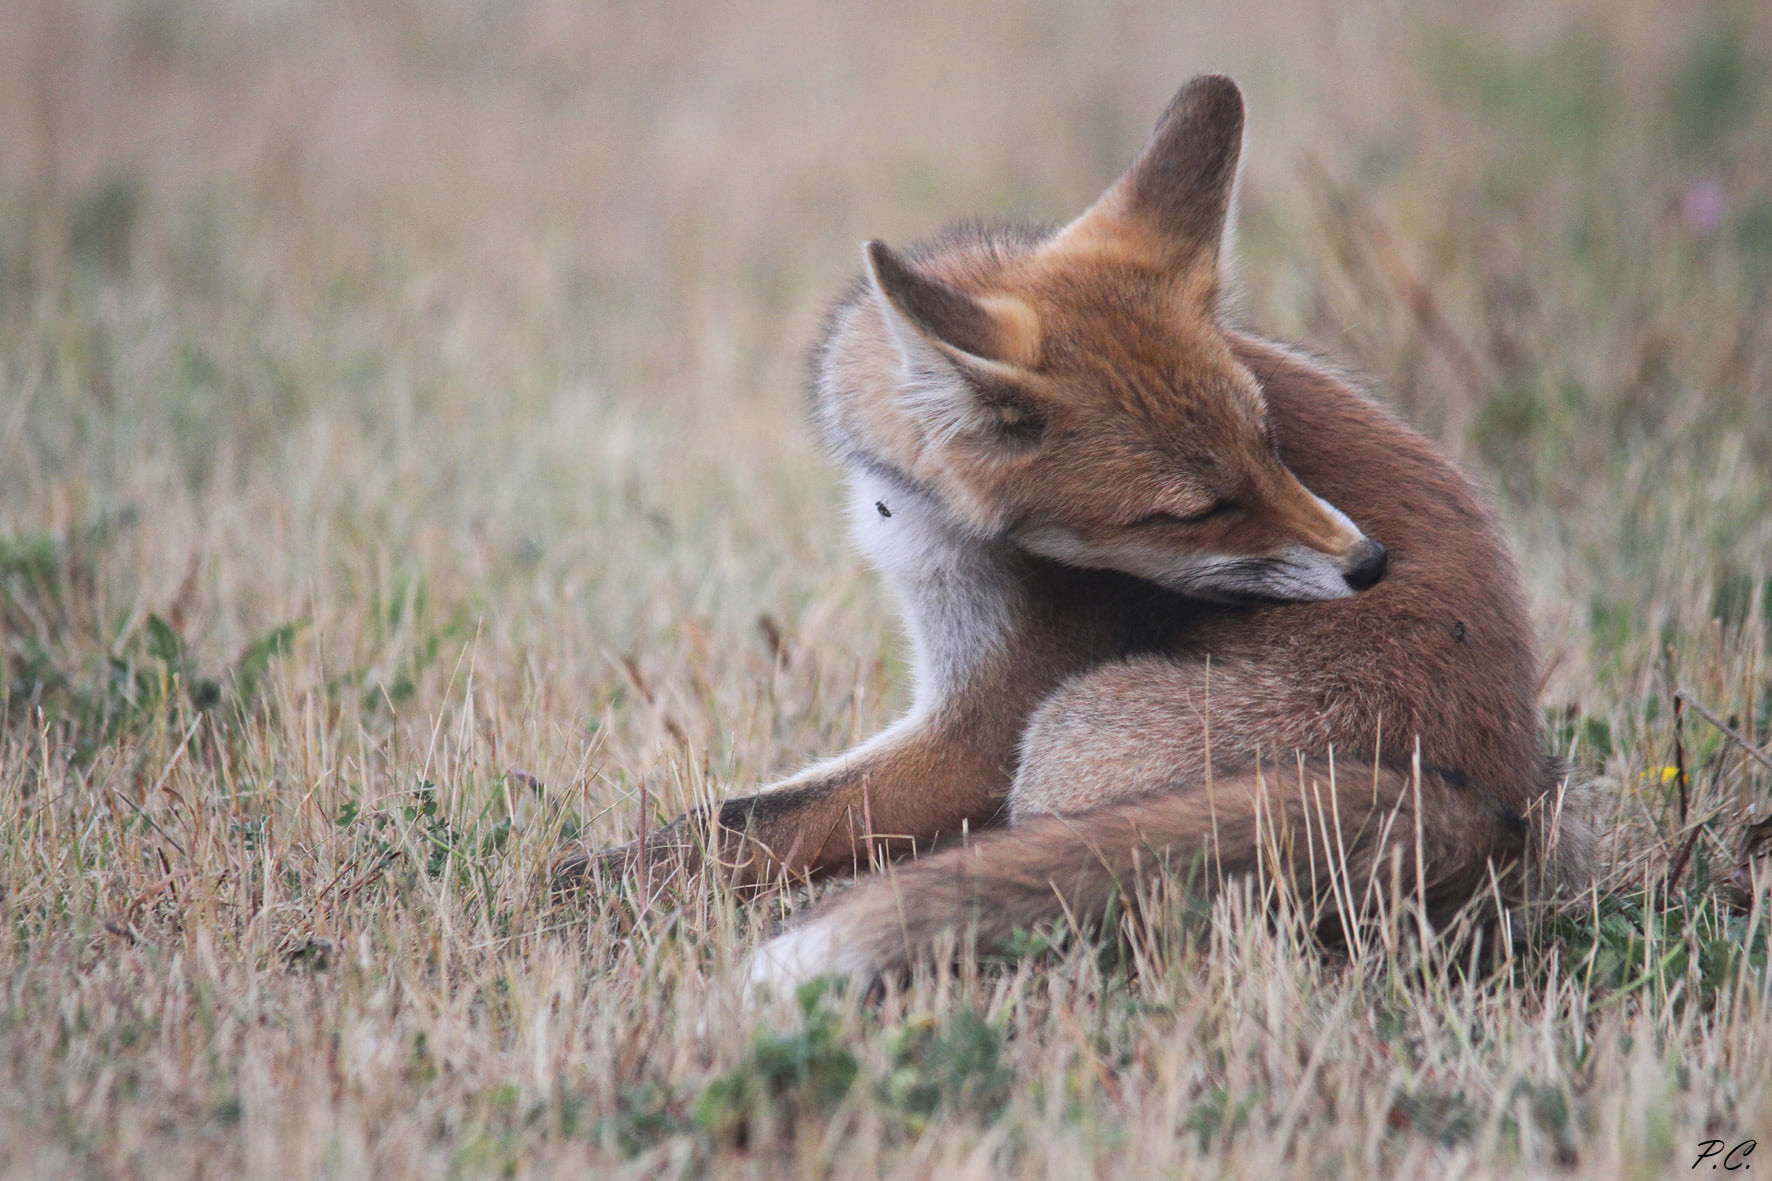 A confidant fox...